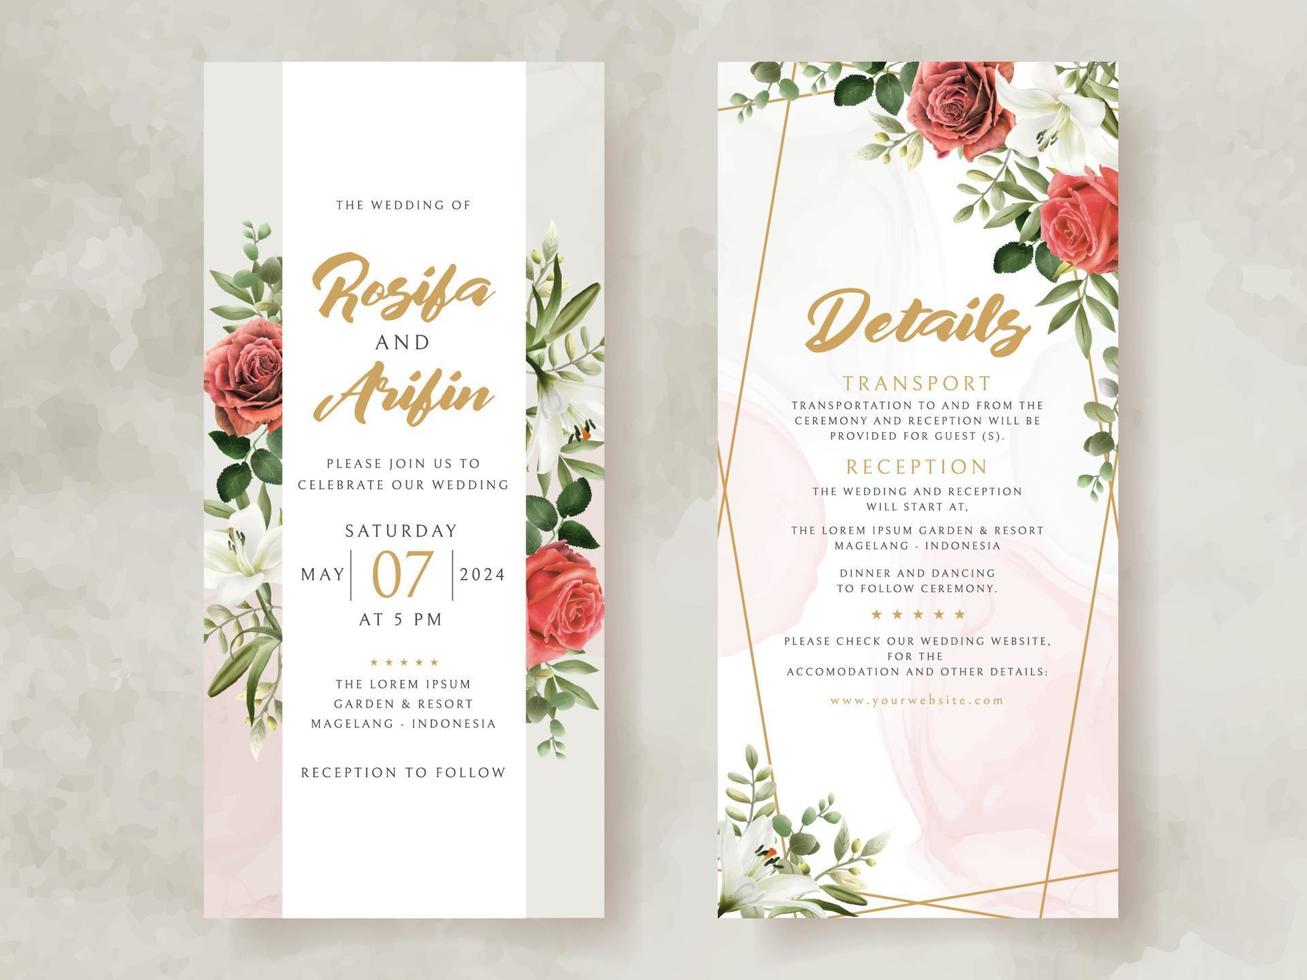 bruiloft uitnodiging kaart met illustratie van lelie en rozen waterverf vector